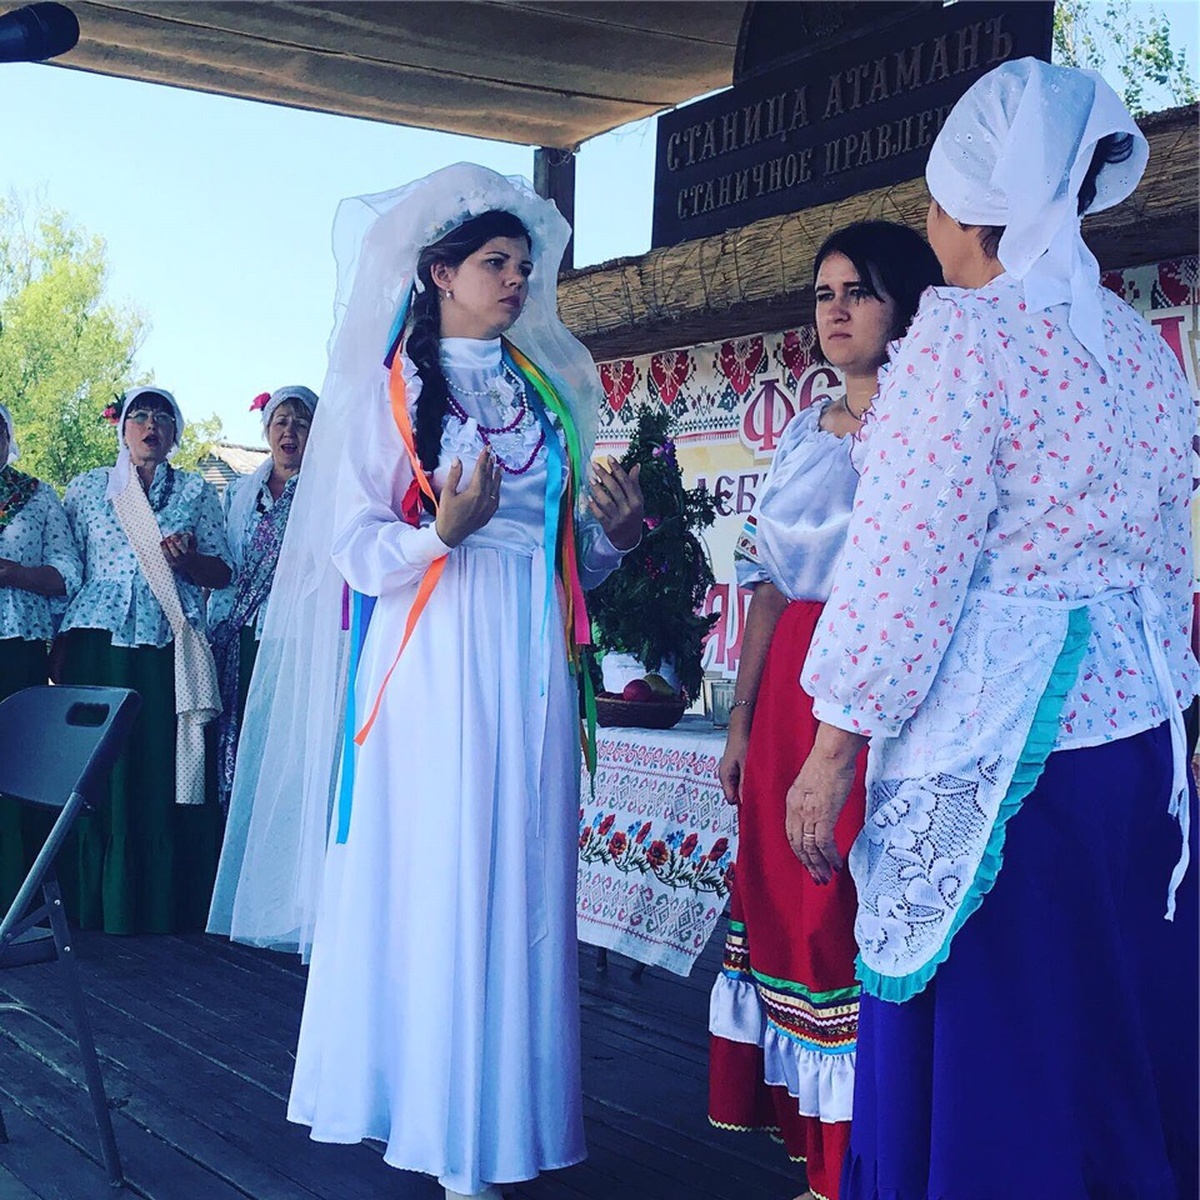 Фестиваль свадебной выпечки и обрядов “Ряднэ гильце” прошел в Атамани